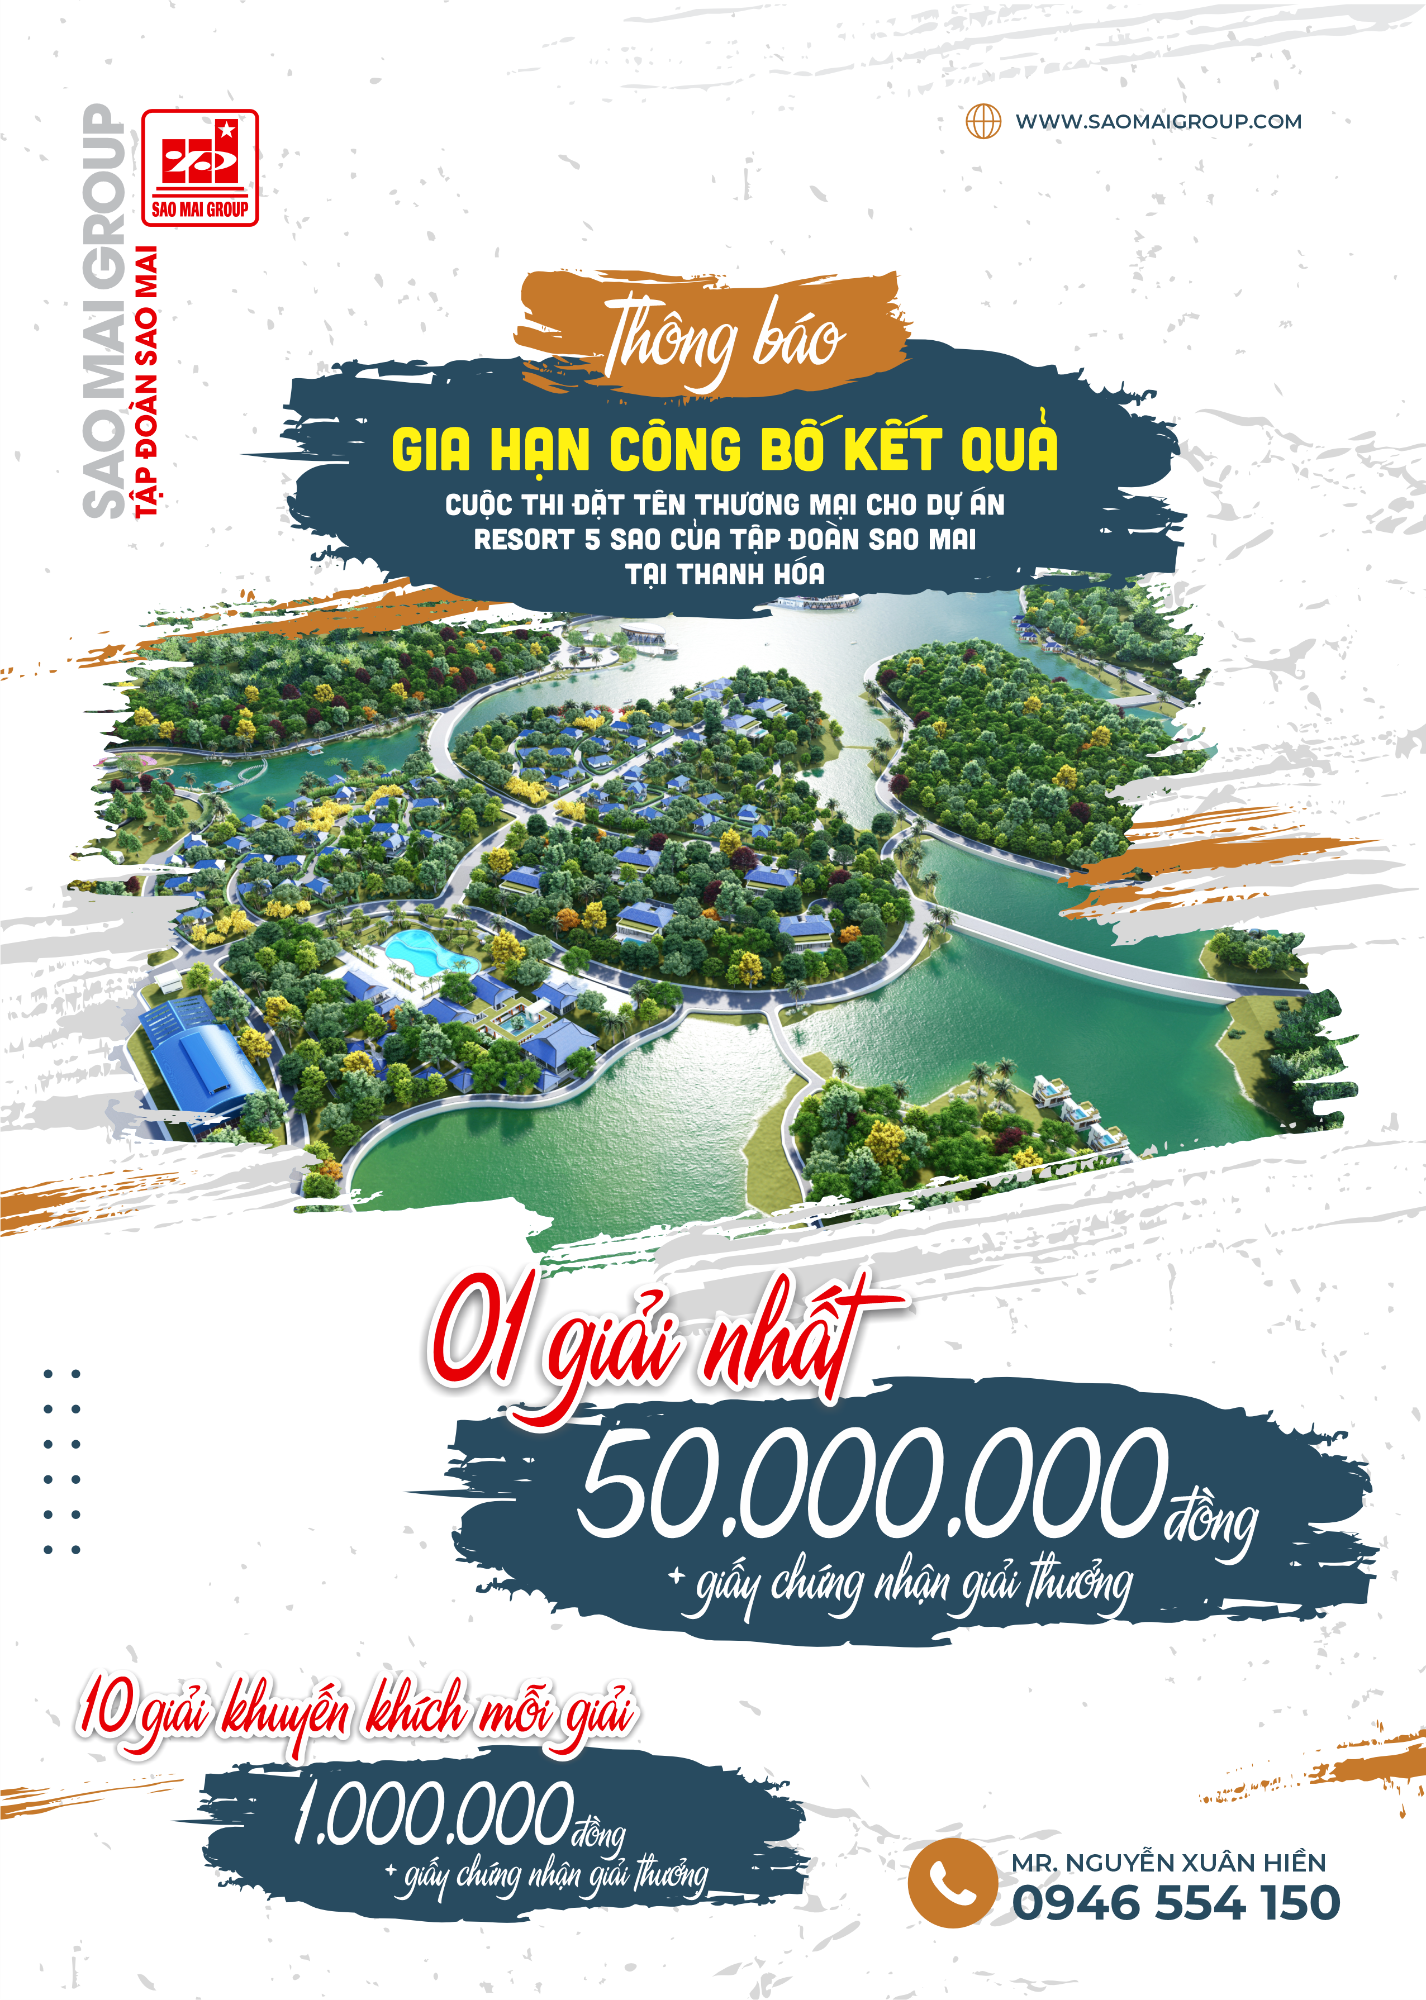 THÔNG BÁO V/v Gia hạn cuộc thi đặt tên thương mại cho dự án  Resort của Tập đoàn Sao Mai tại Thanh Hóa